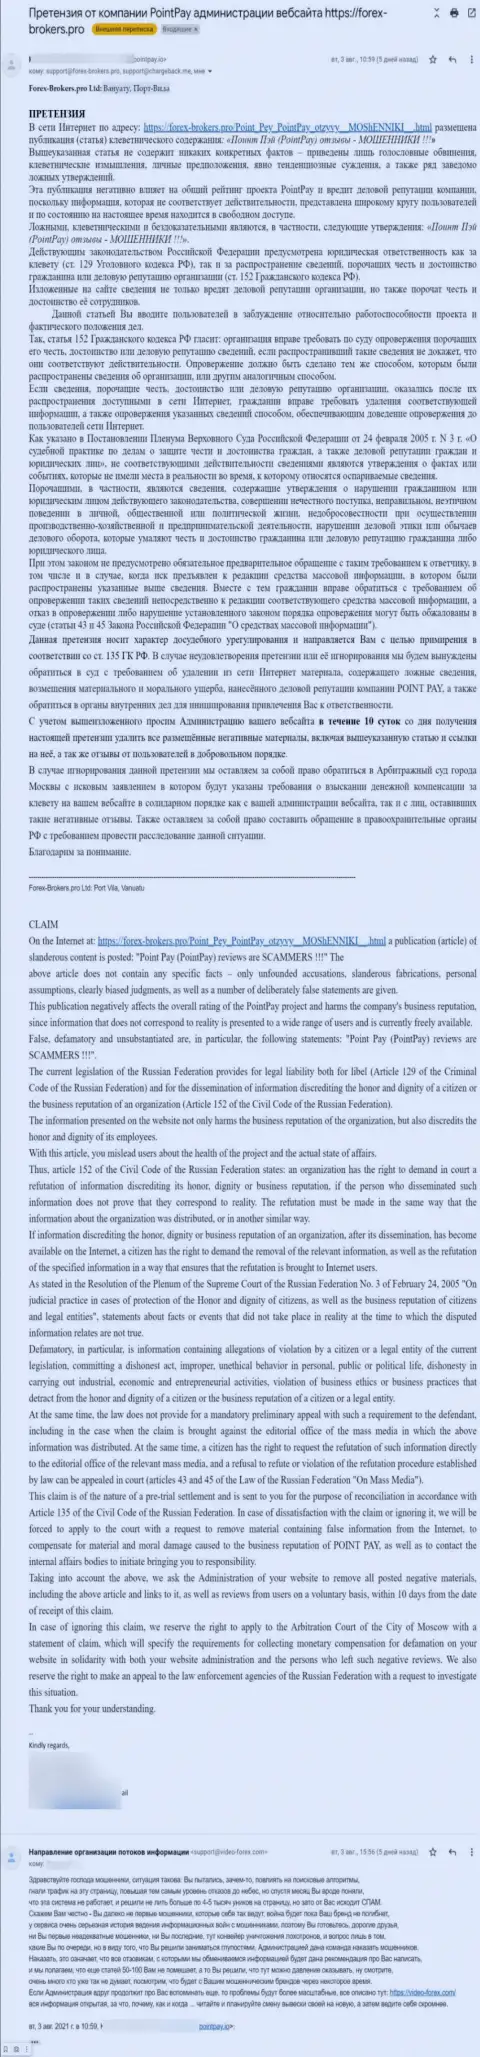 Еще одна петиция кидал ПоинтПай с требованием убрать обзорный материал